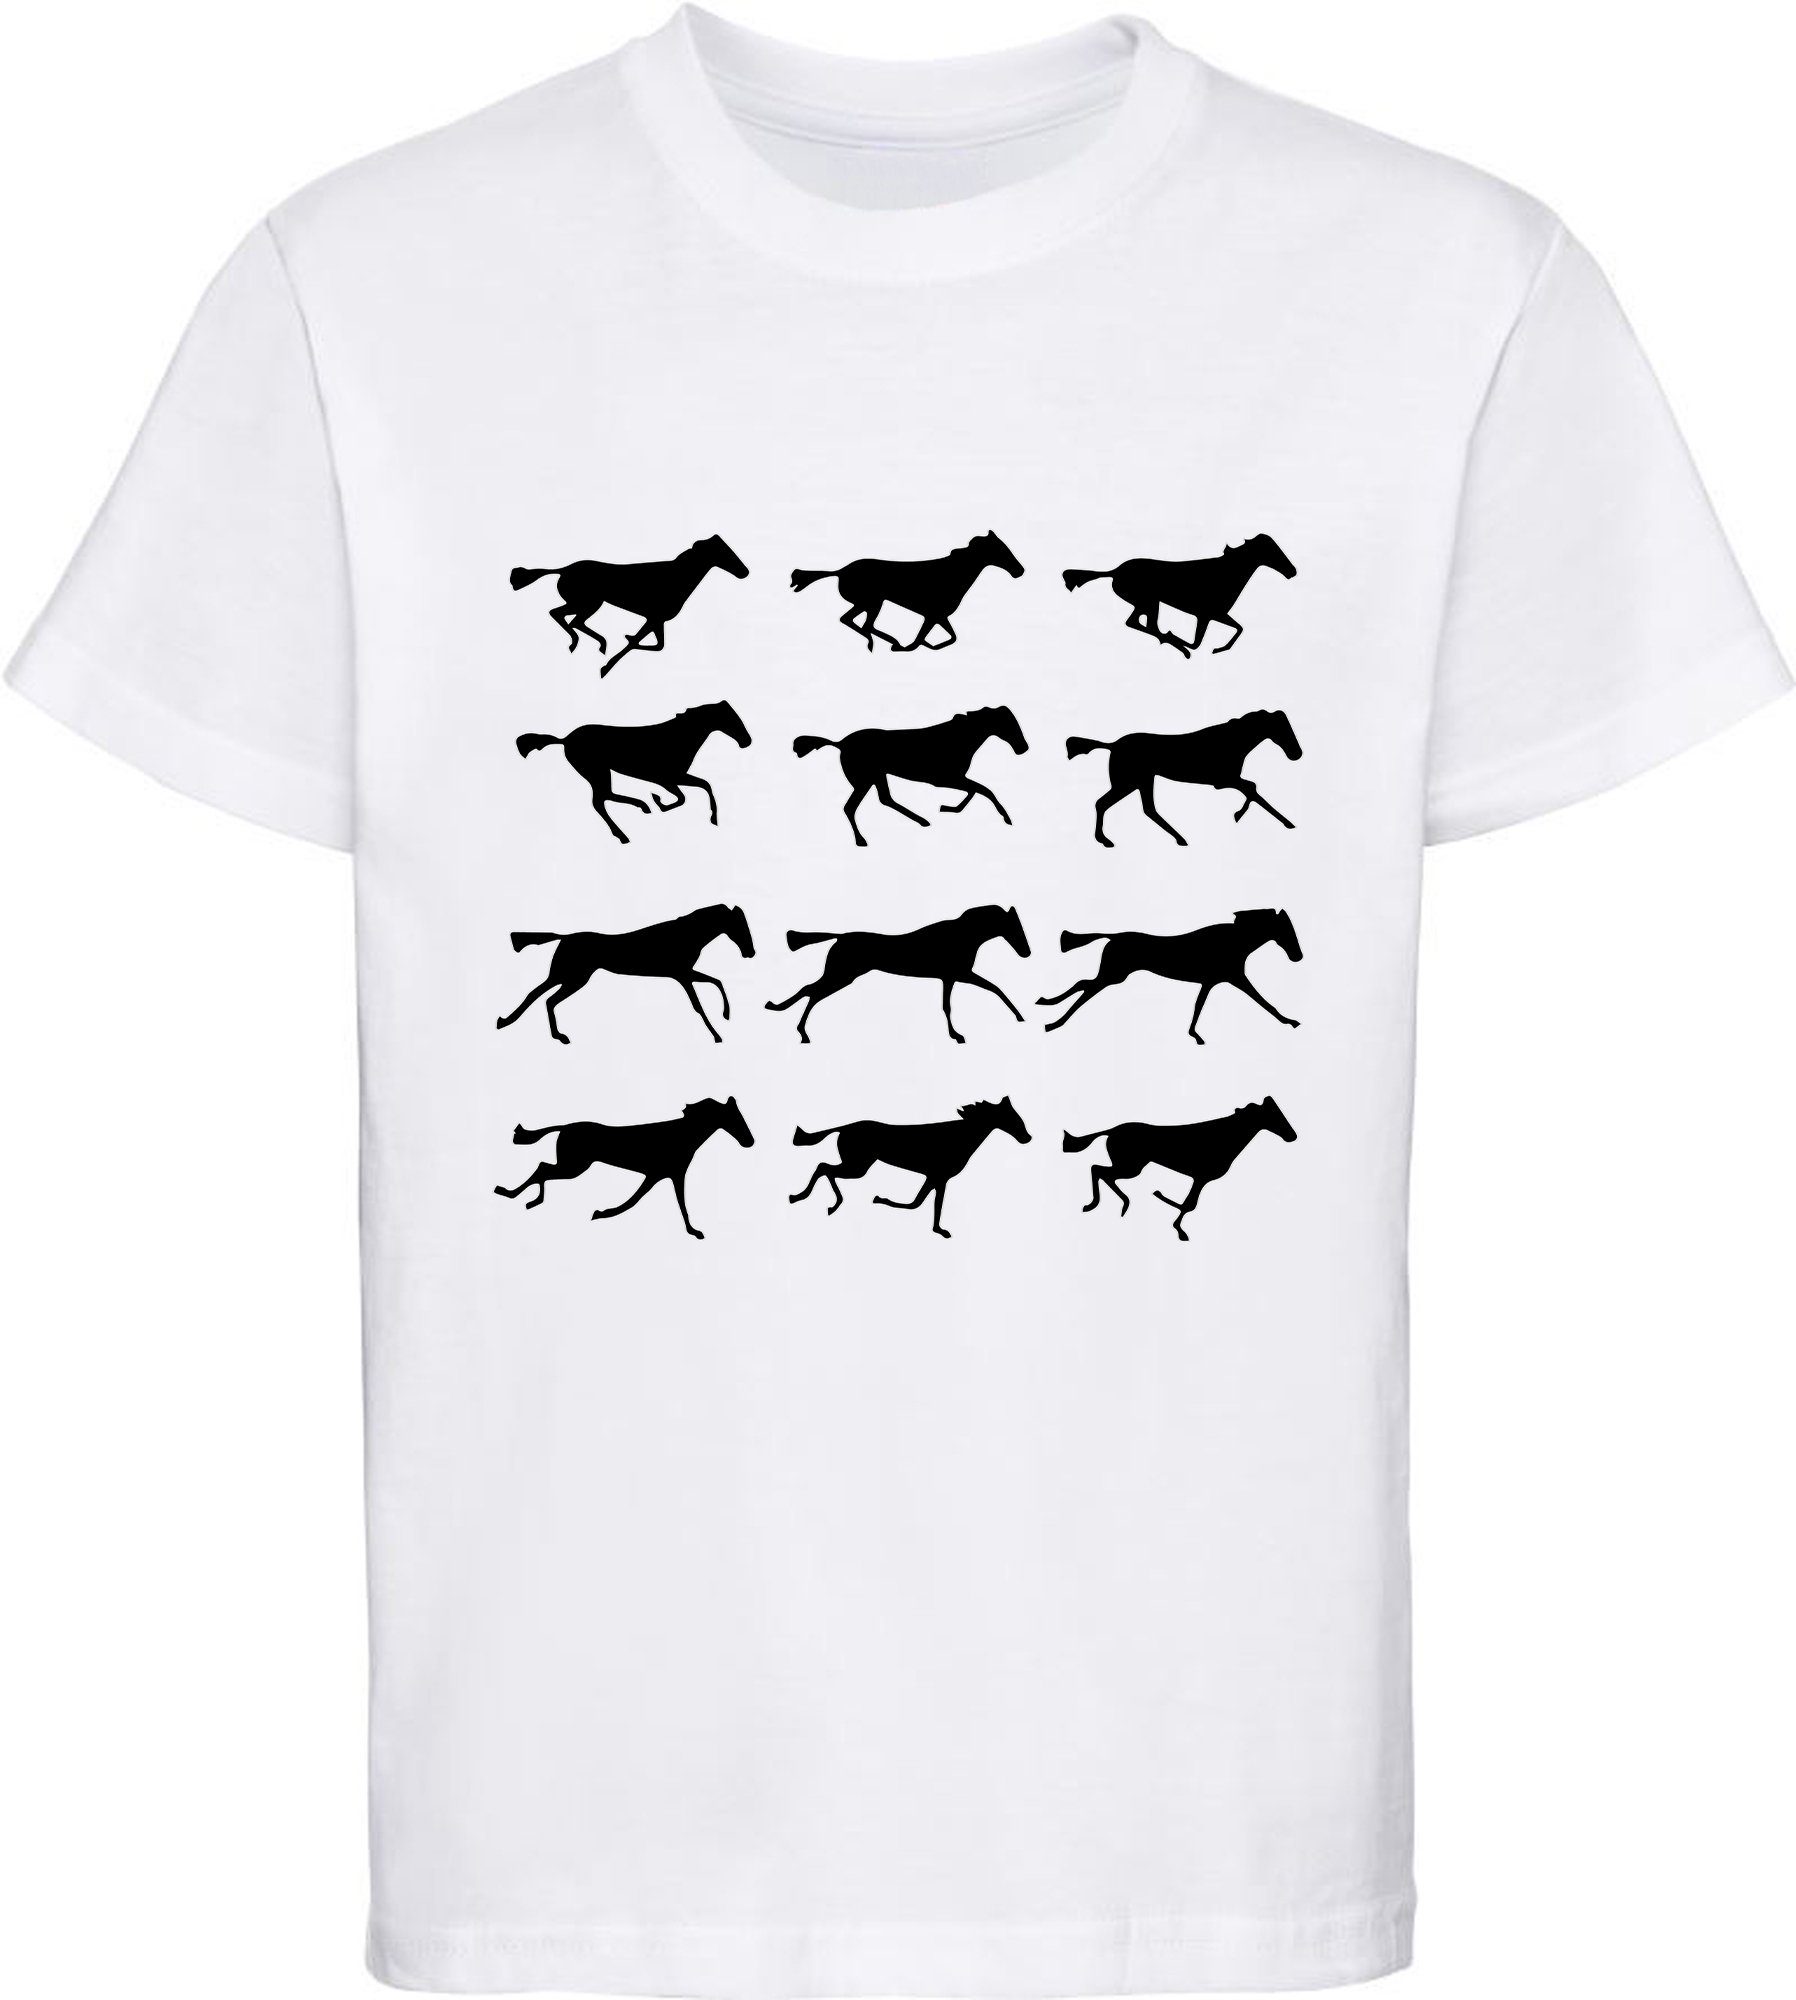 von Aufdruck, MyDesign24 T-Shirt weiss i173 Baumwollshirt - Mädchen Print-Shirt bedrucktes mit Silhouetten Pferden